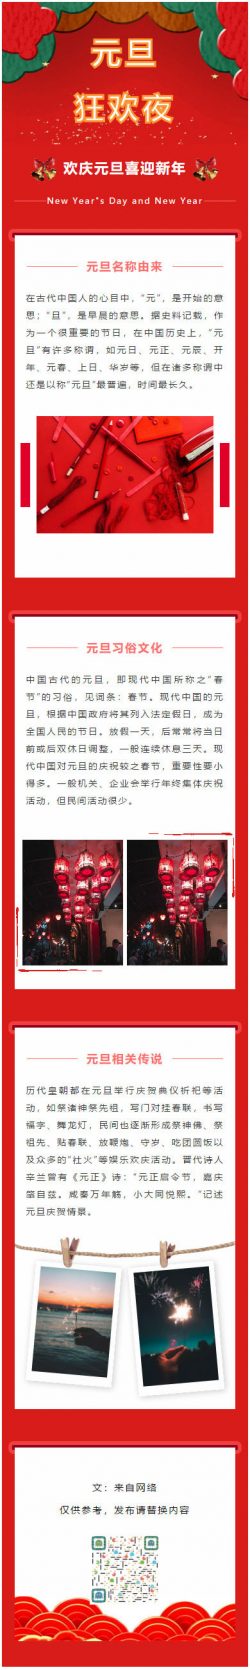 元旦新年快乐红色中国风格微信公众号模板推送图文素材